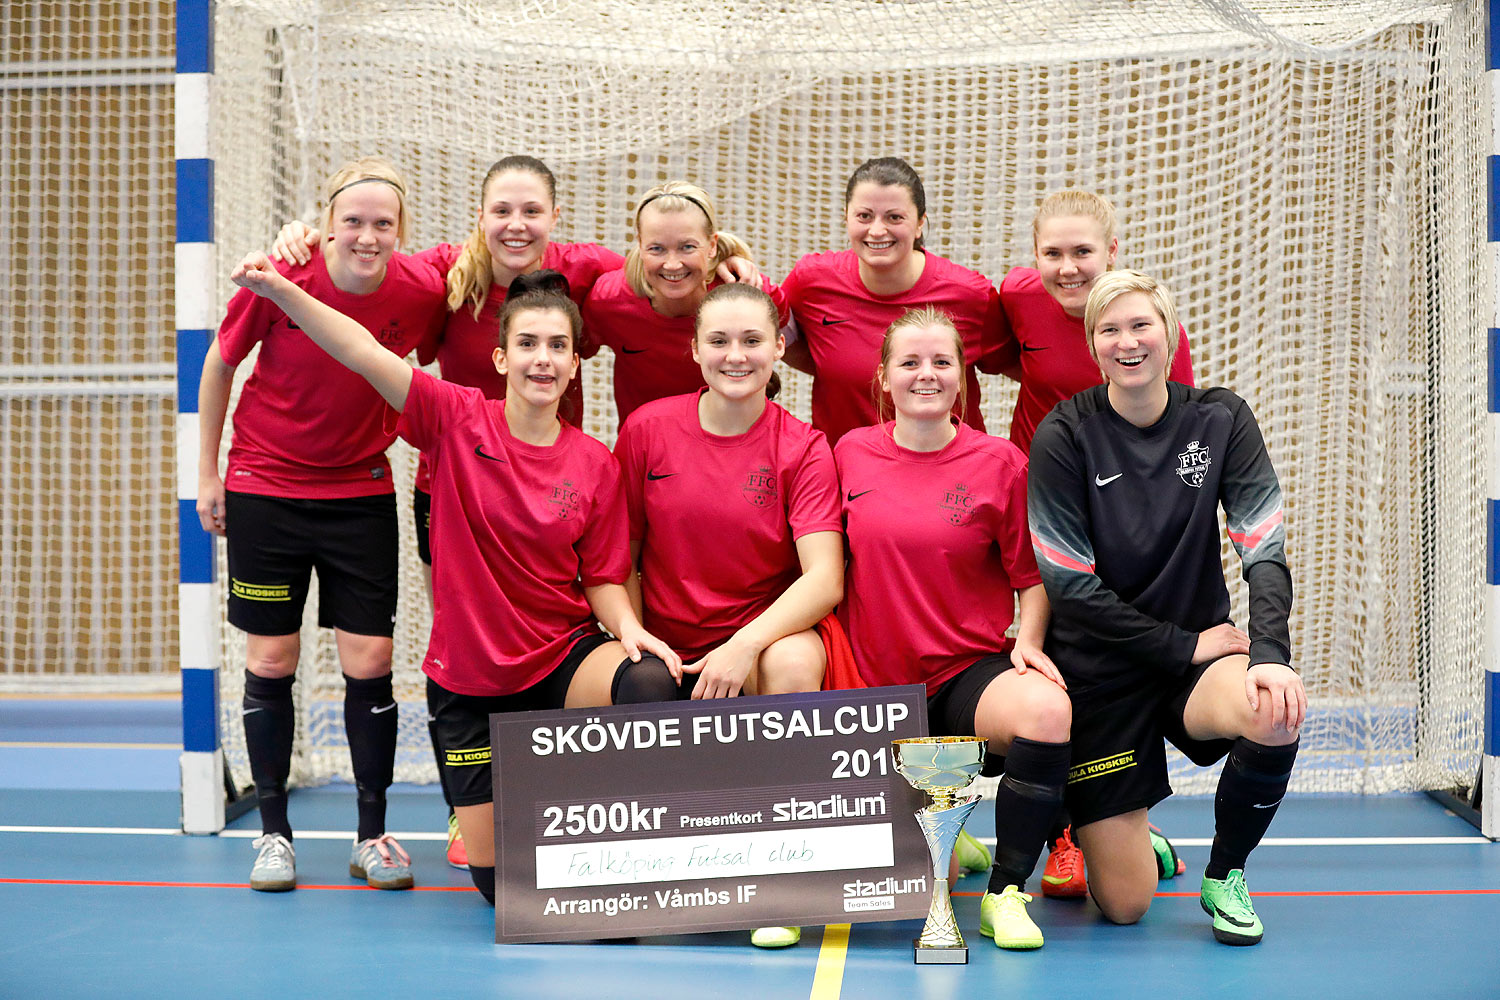 Skövde Futsalcup Damer A-FINAL IFK Hallsberg FK 1-Falköping Futsal Club,dam,Arena Skövde,Skövde,Sverige,Skövde Futsalcup 2016,Futsal,2016,143012